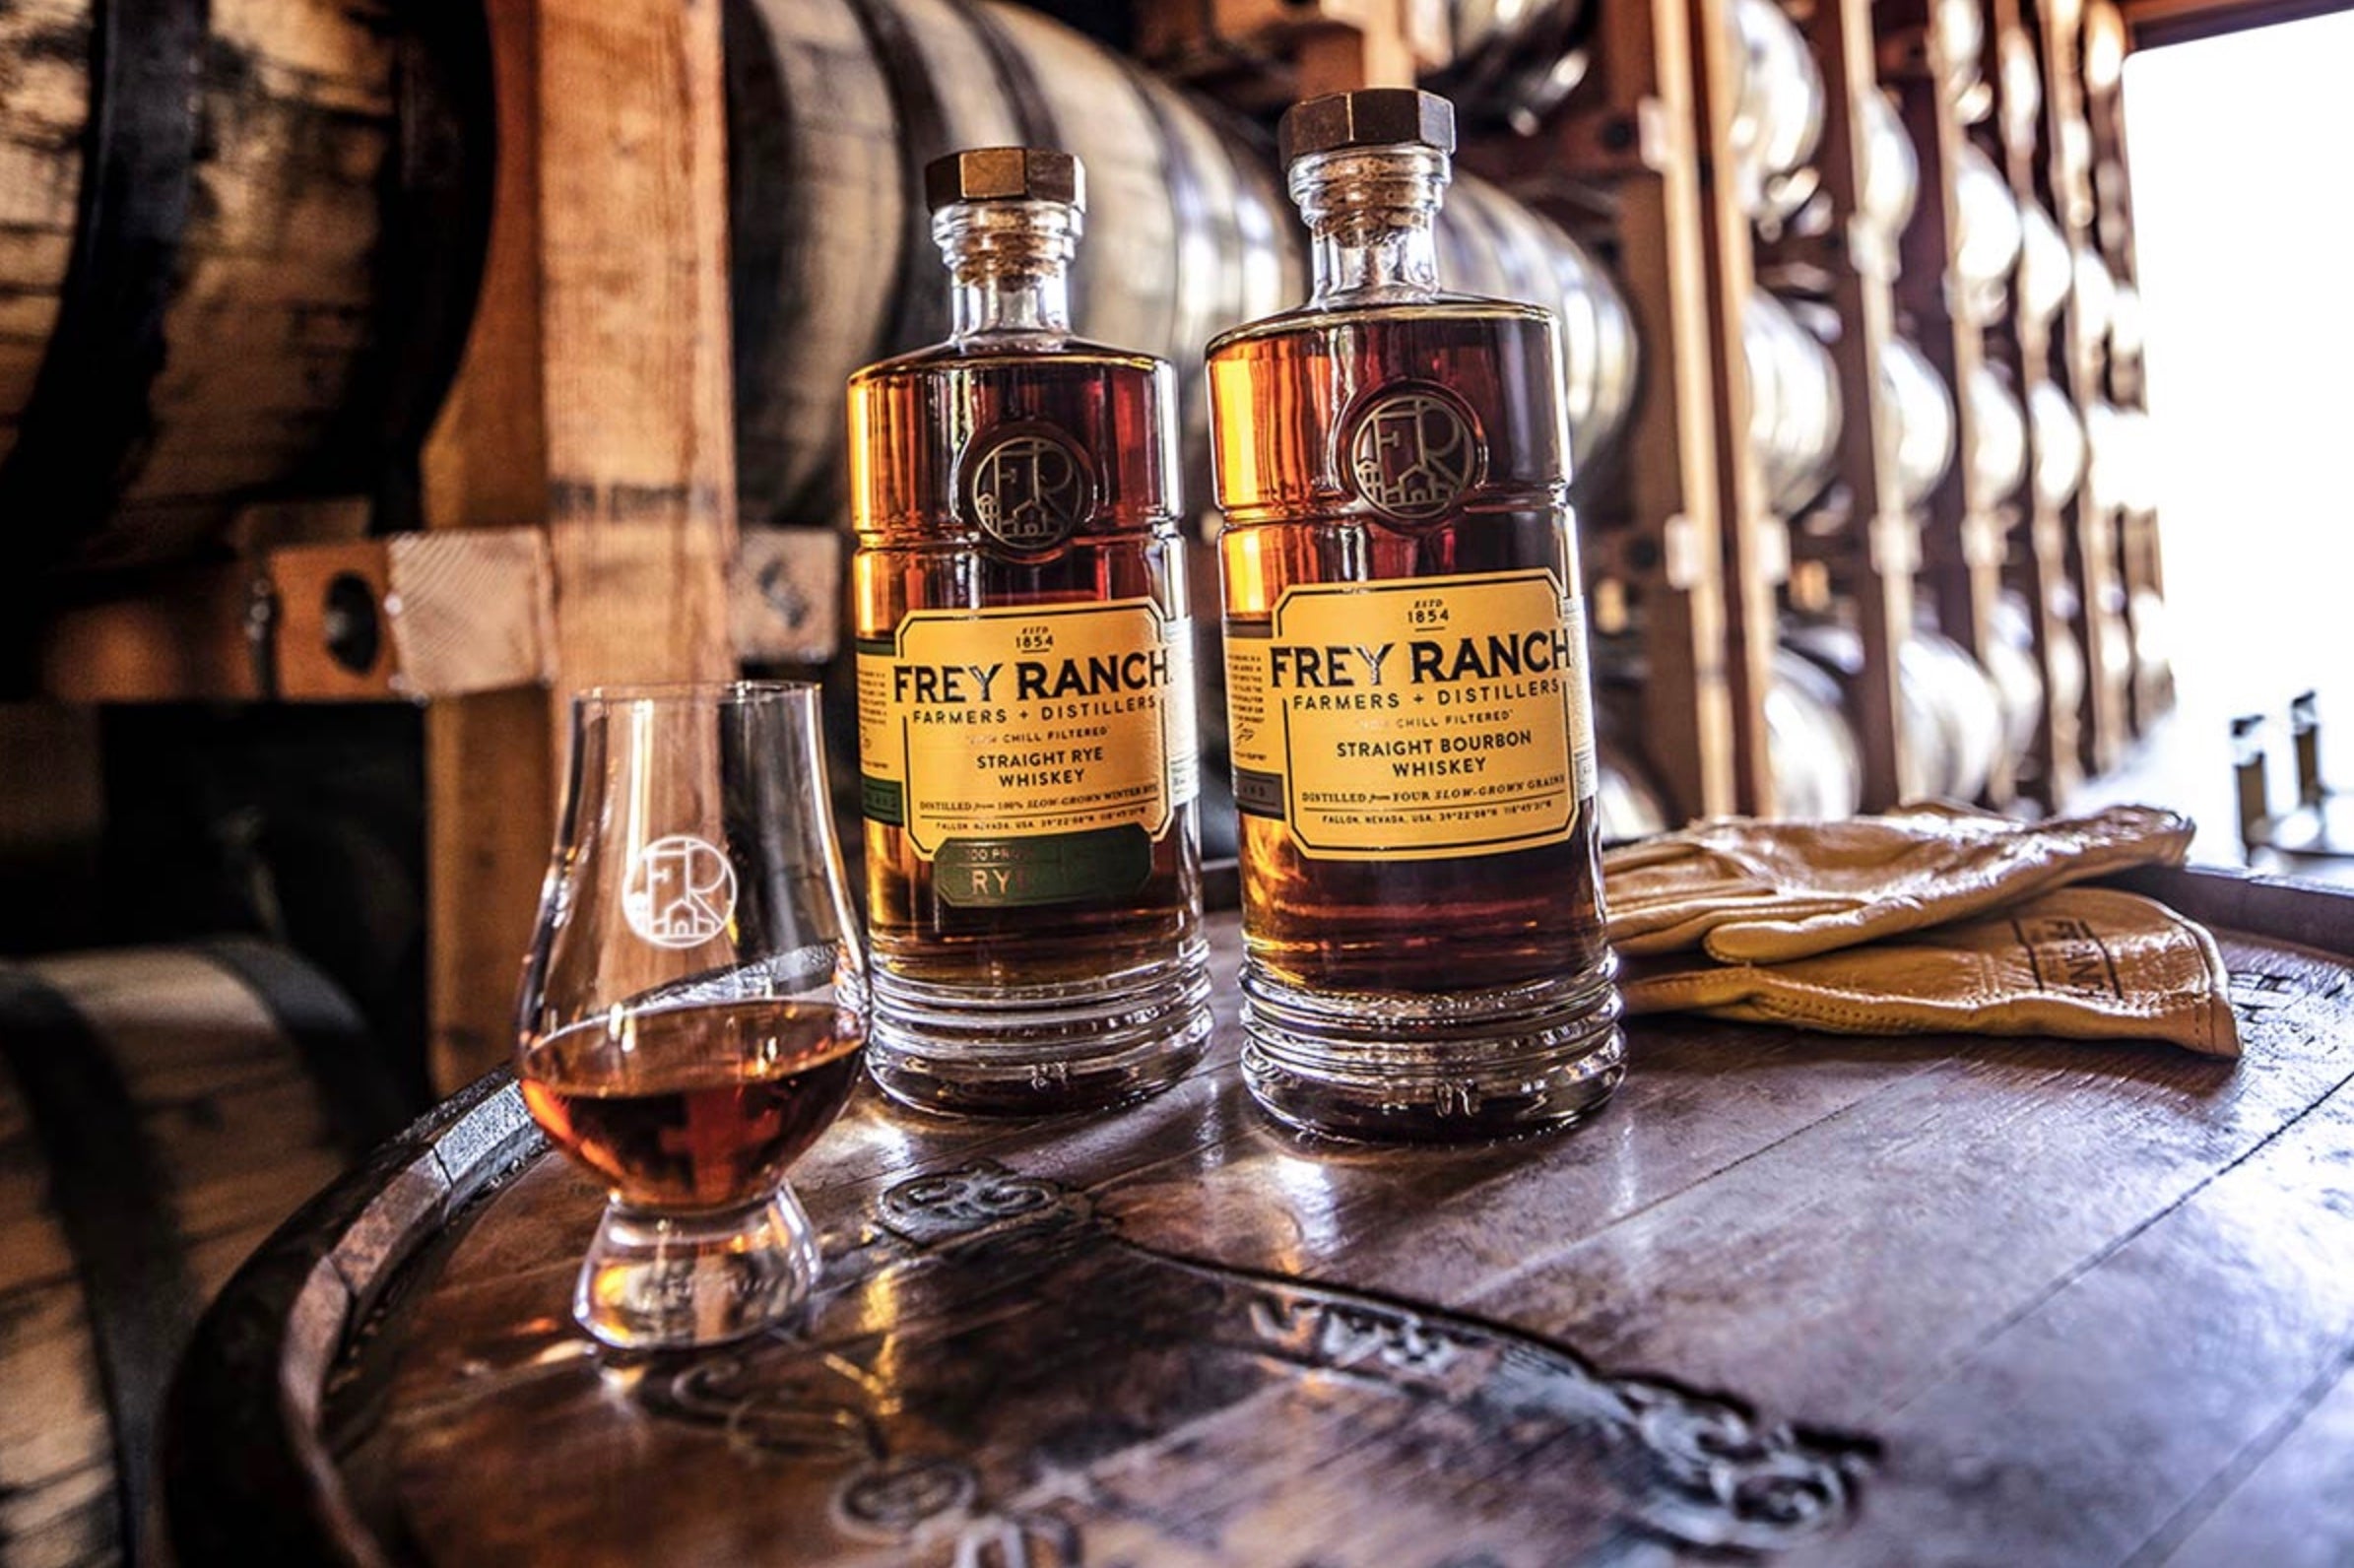 Frey Ranch Bottled in Bond Straight Rye Whiskey